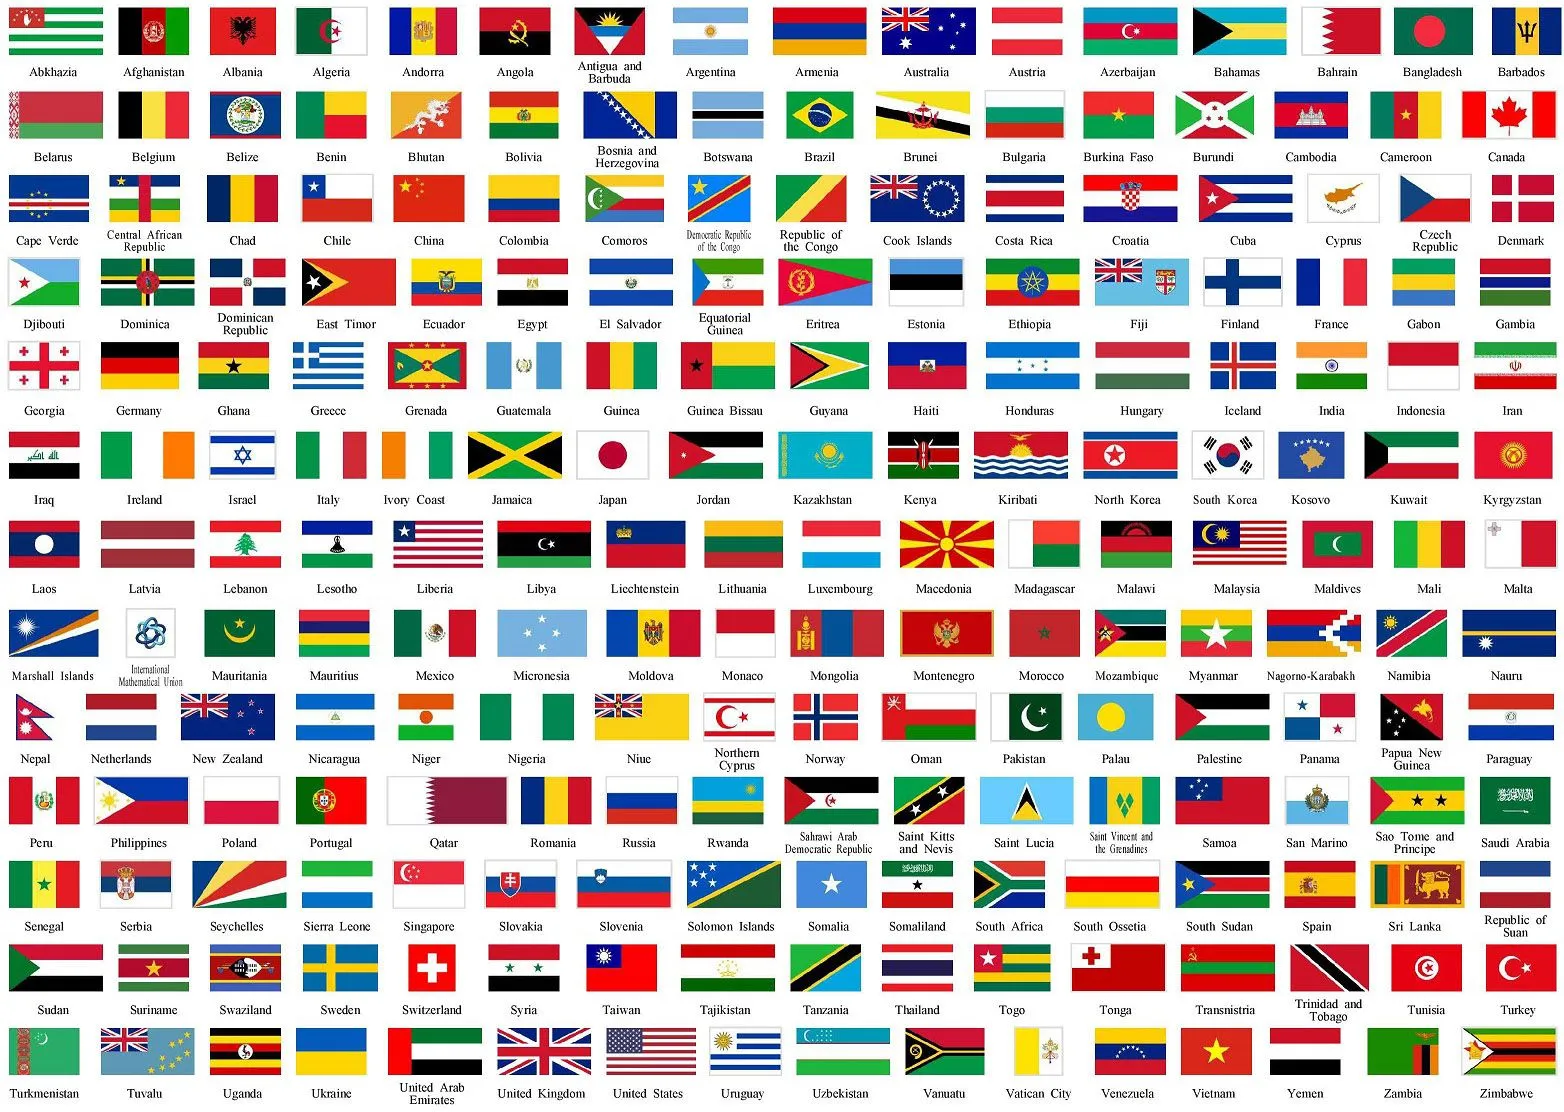 banderas del Mundo, el catálogo completo de las banderas.